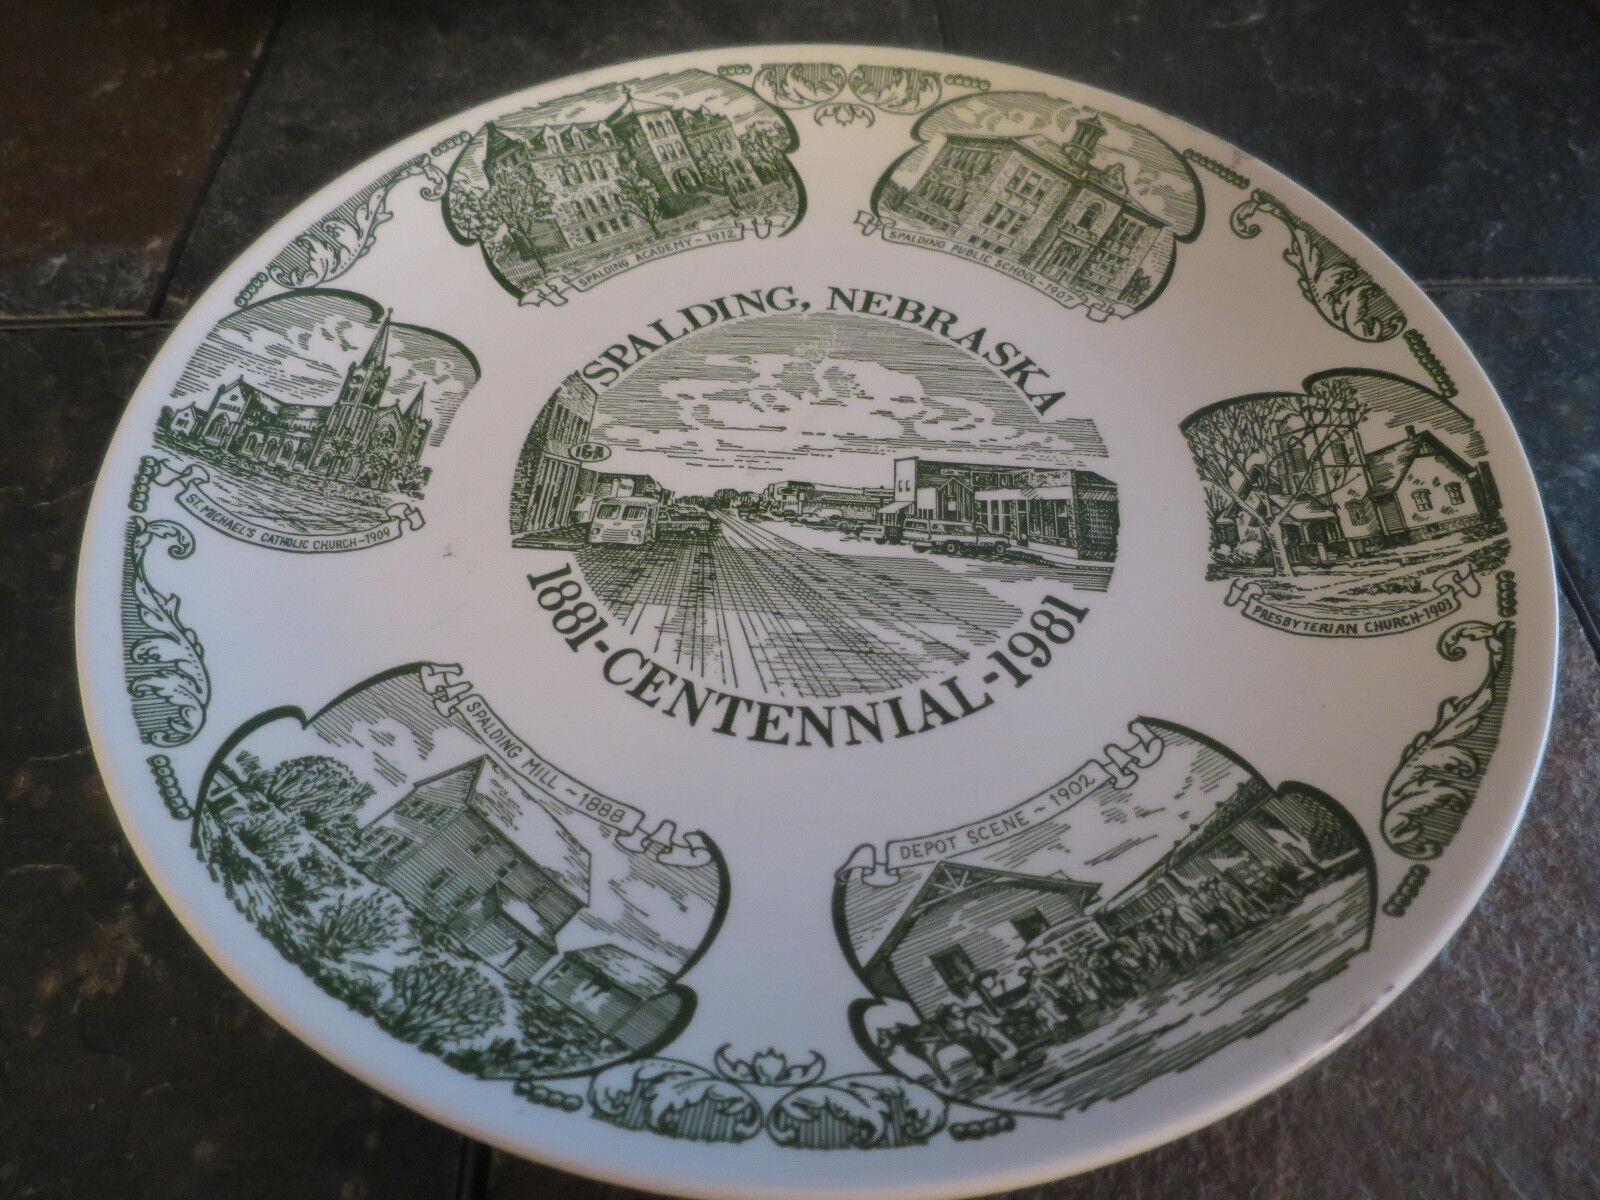 Spalding Nebraska 1981 Centennial Plate Plaque Vintage